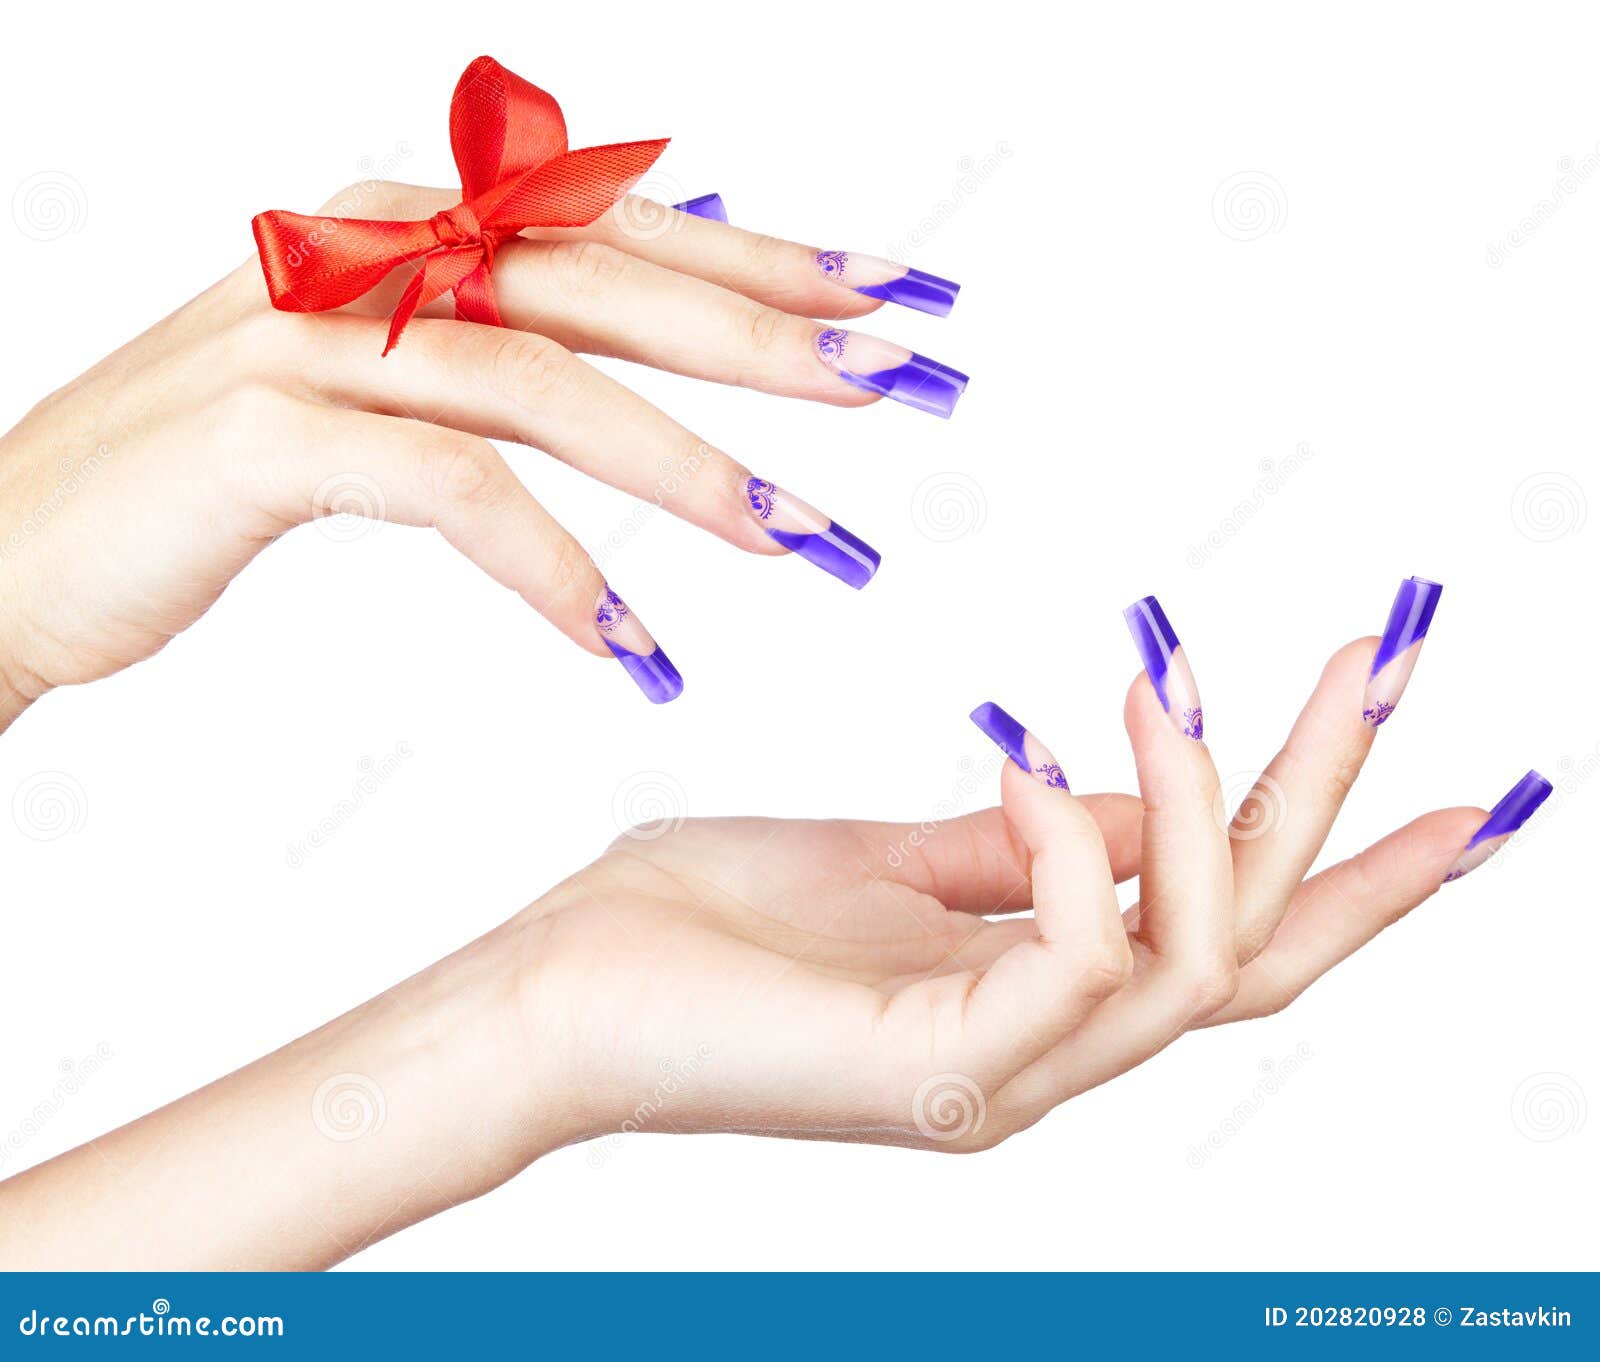 Manos Con Manicura De Uñas Acrílicas Azul Francés Y Pintura Con Arco En El  Dedo Foto de archivo - Imagen de perfecto, muchacha: 202820928